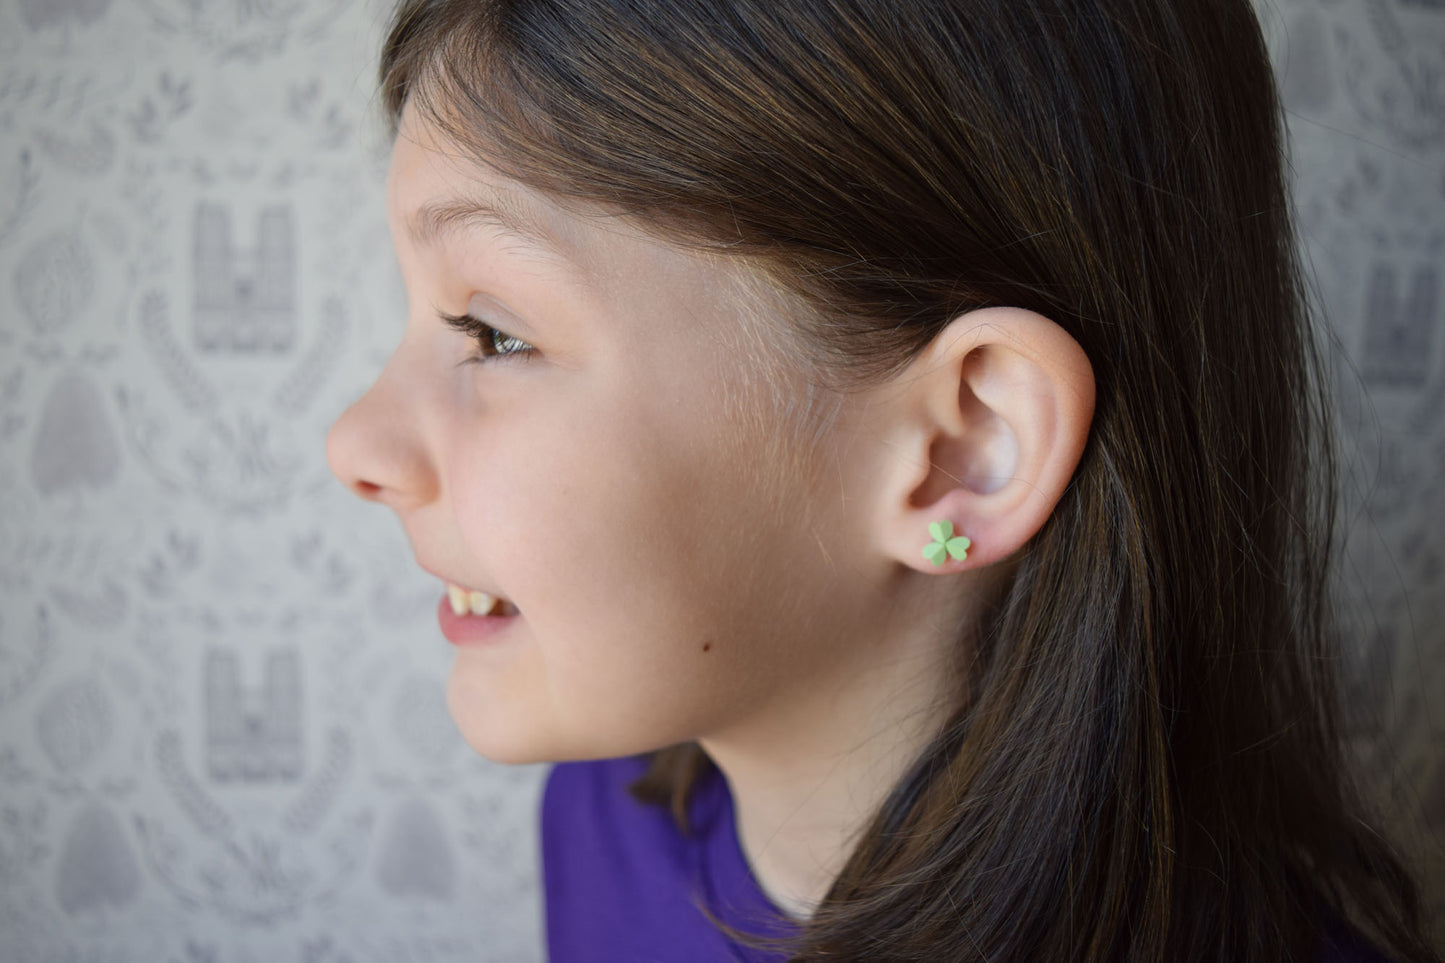 saint earrings for kids